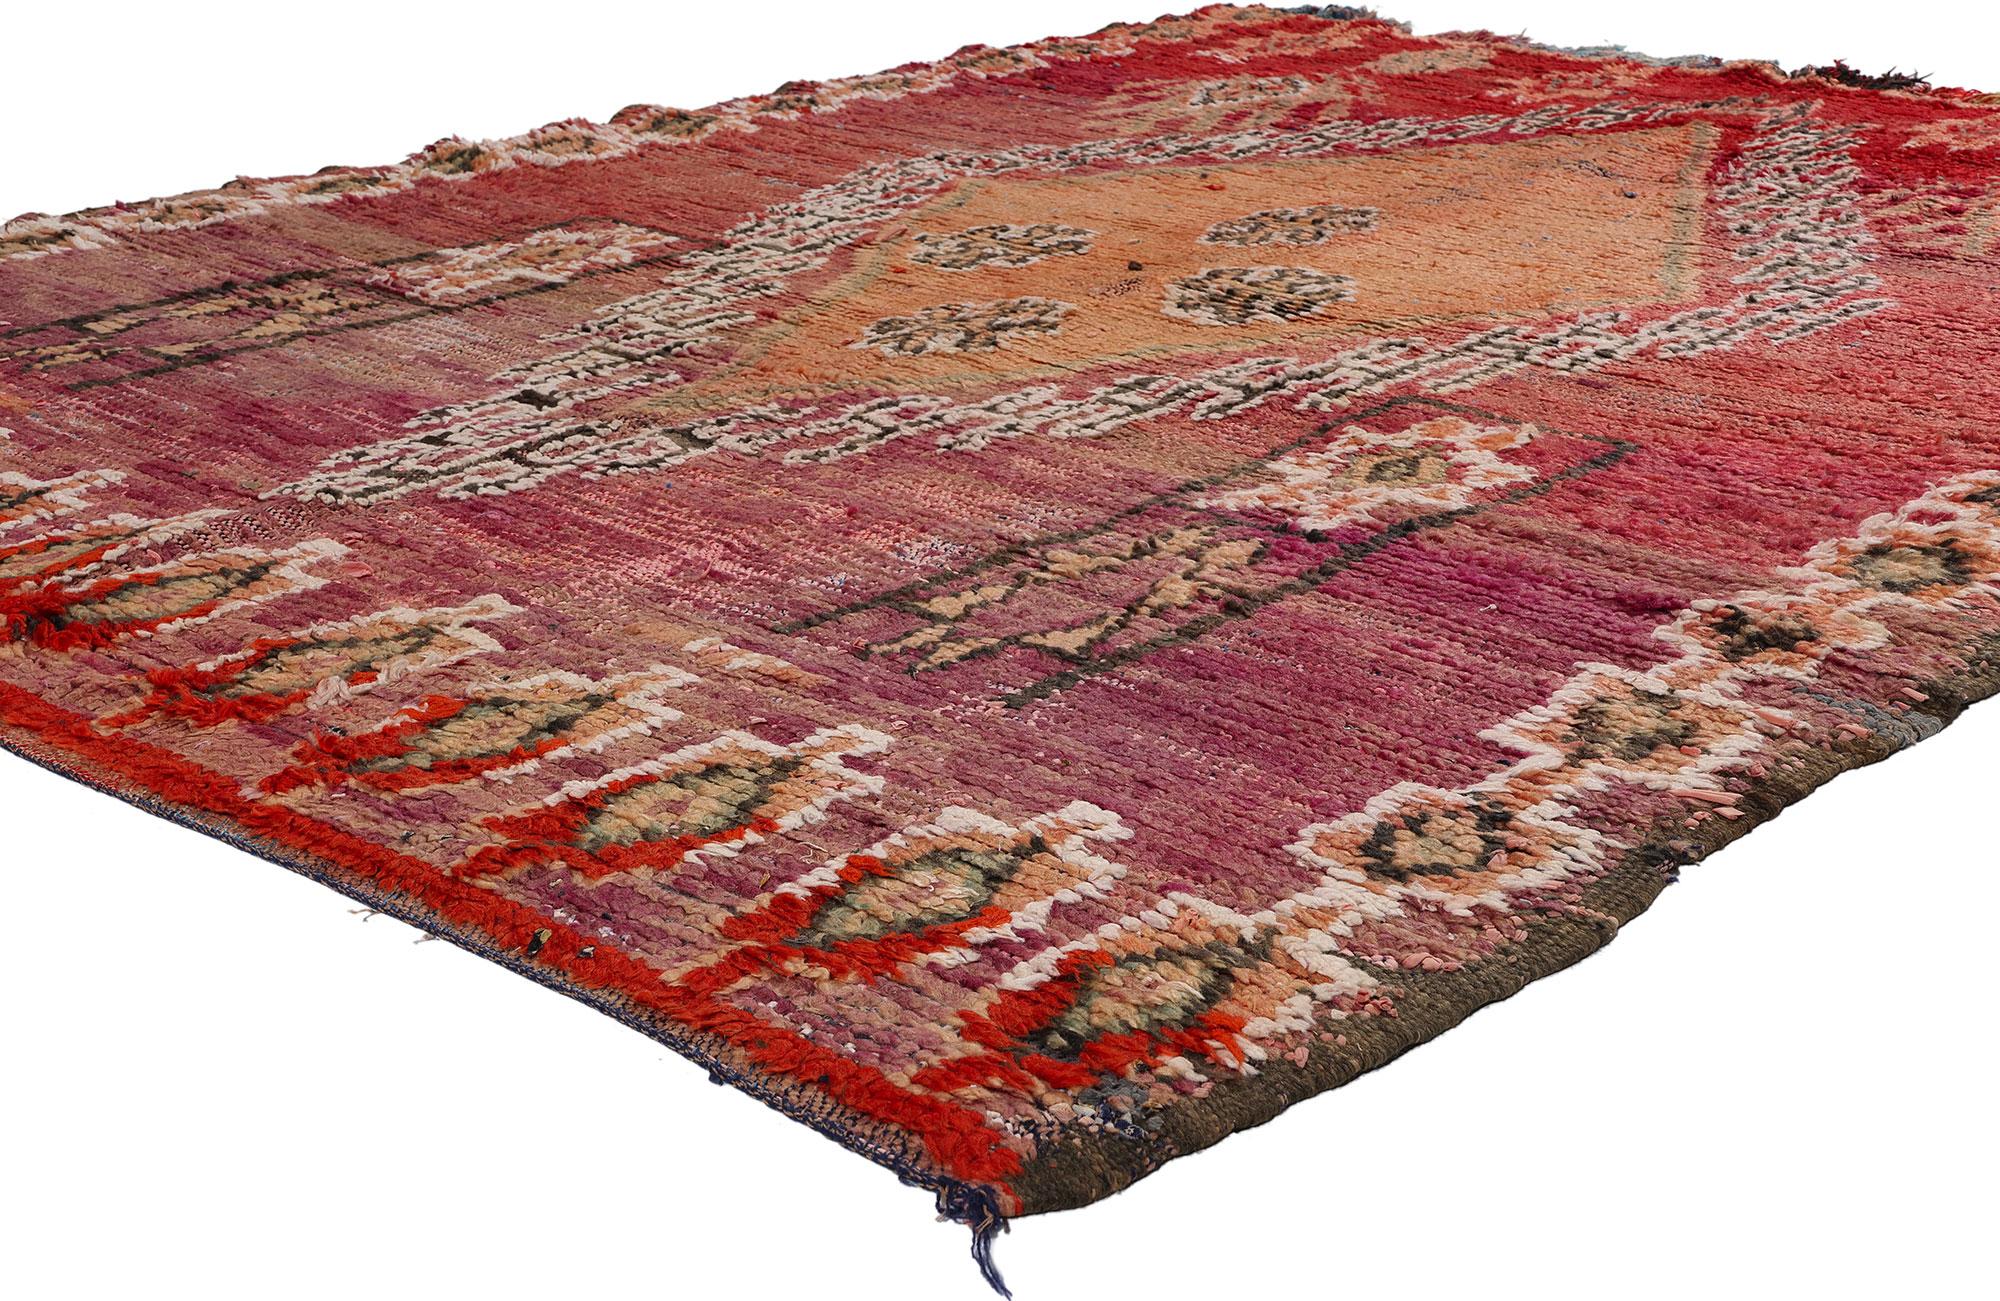 21776 Tapis marocain Vintage By Boujad Boucherouite rouge, 06'02 x 07'09. Le tapis Boujad, ou tapis Boujad Boucherouite, est un témoignage de l'essence tribale de l'artisanat durable, originaire de la région de Boujad, dans la province de Khouribga,